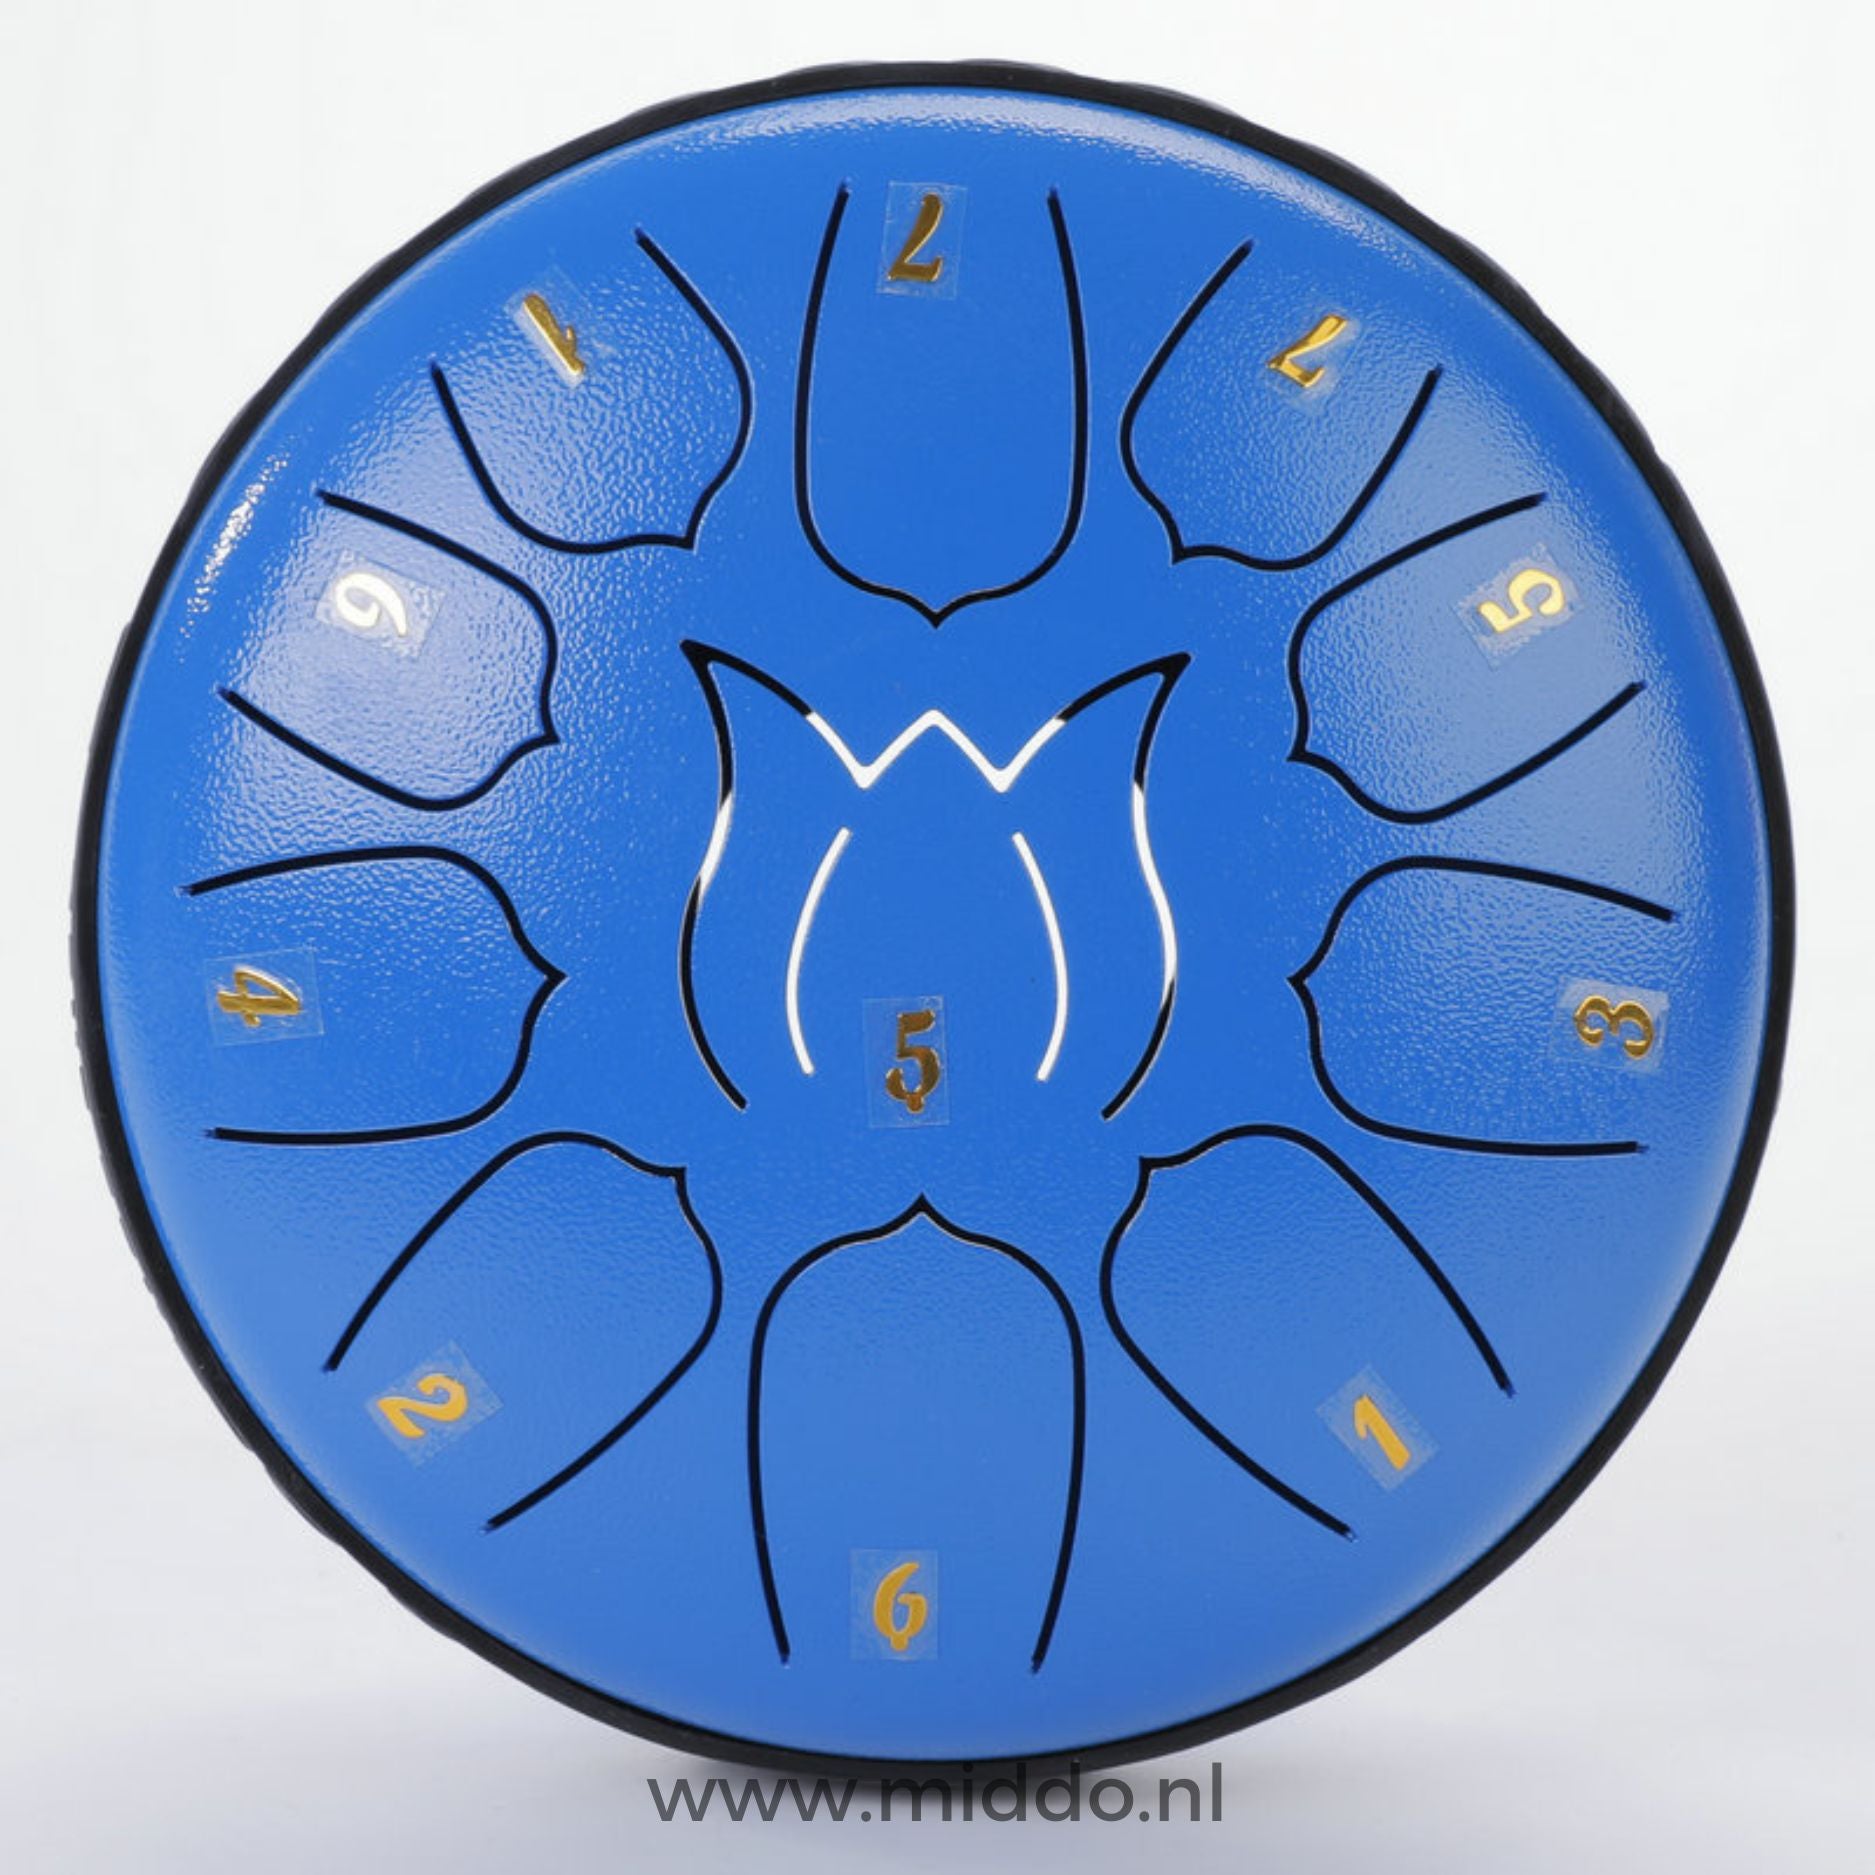 Blauwe steel tongue drum met cijfers op een witte achtergrond